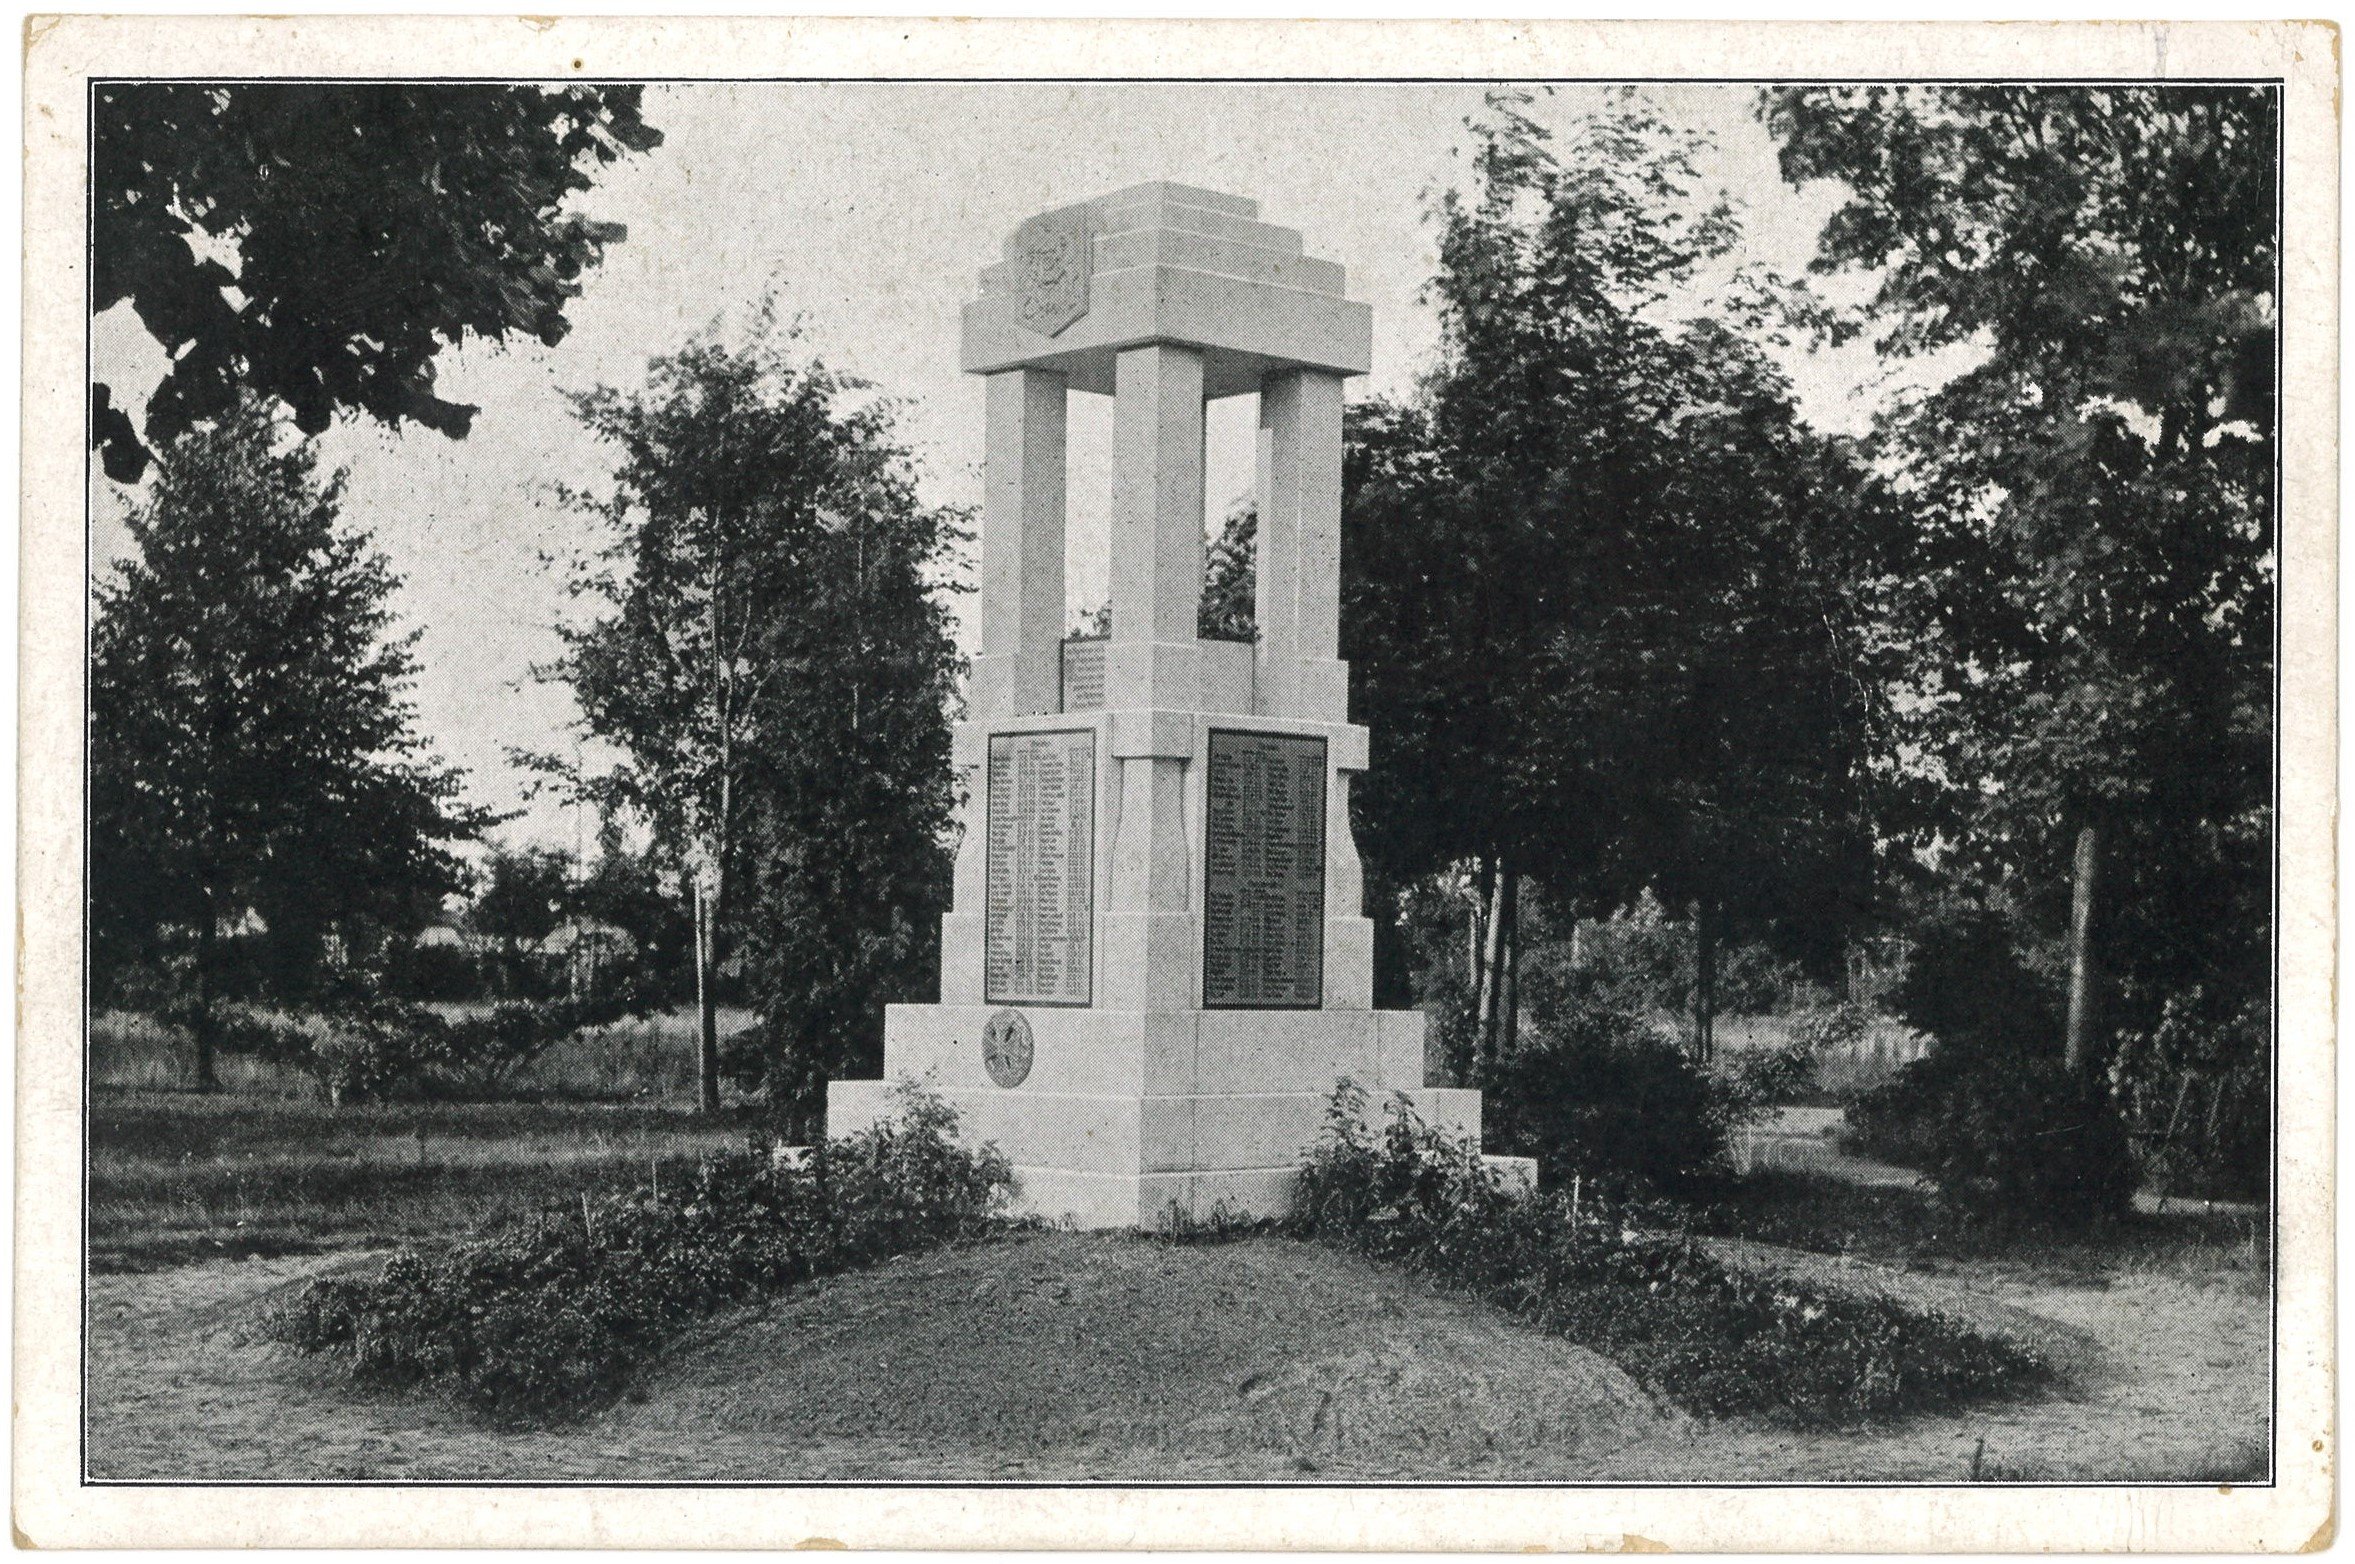 Falkensee-Seegefeld: Kriegerdenkmal (Landesgeschichtliche Vereinigung für die Mark Brandenburg e.V. CC BY)